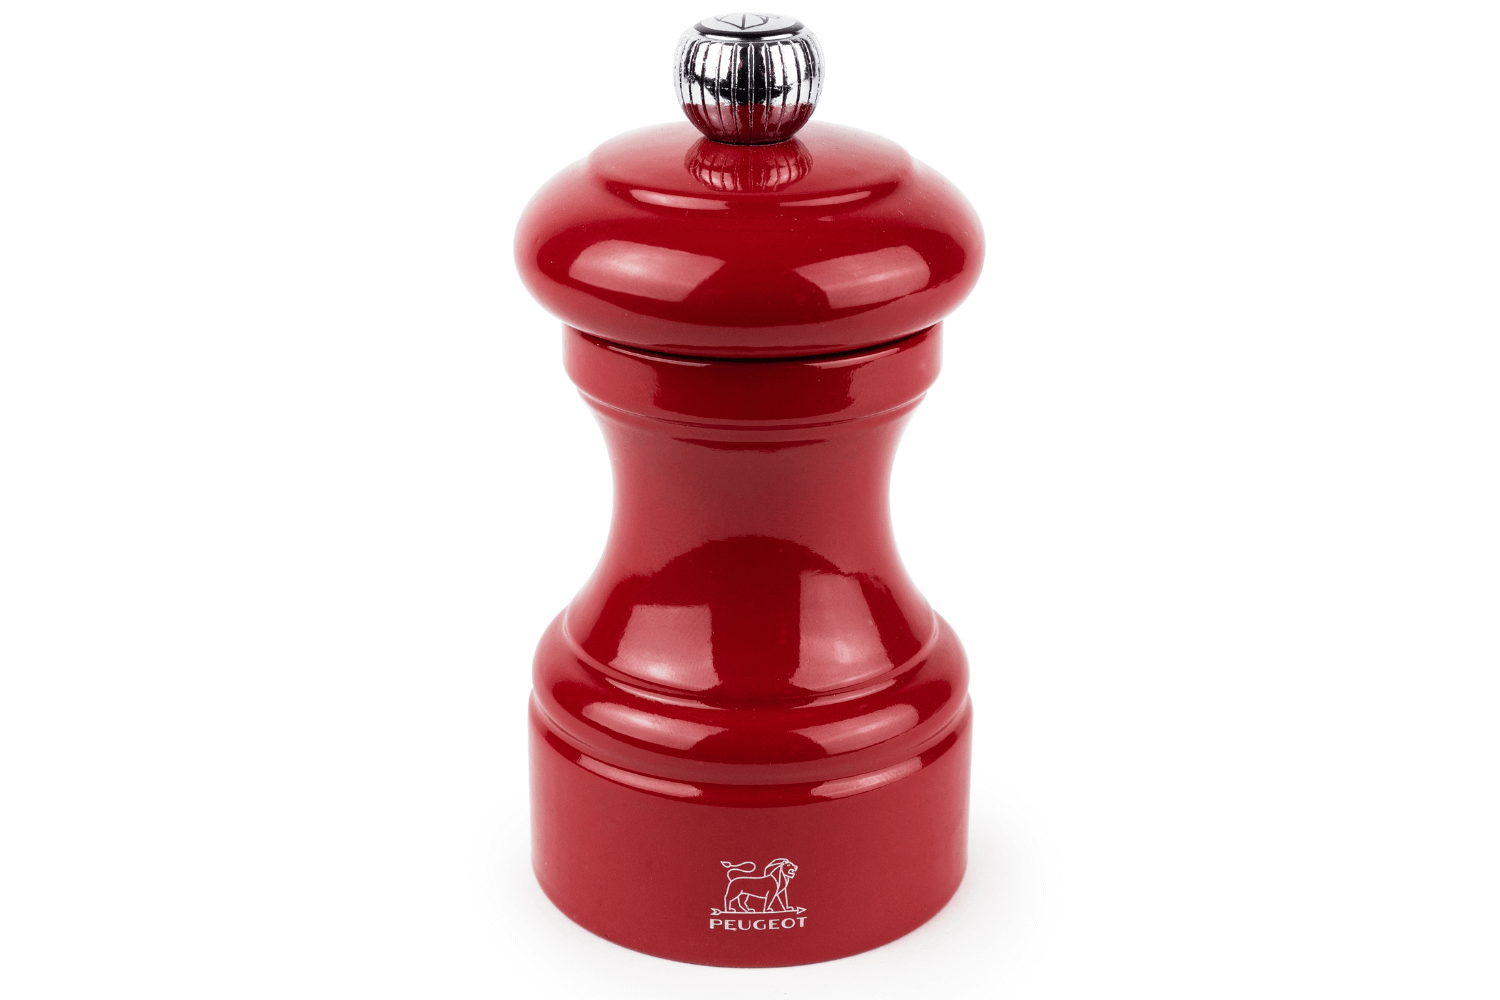 Peugeot Bistro - Moulin à poivre en bois rouge passion